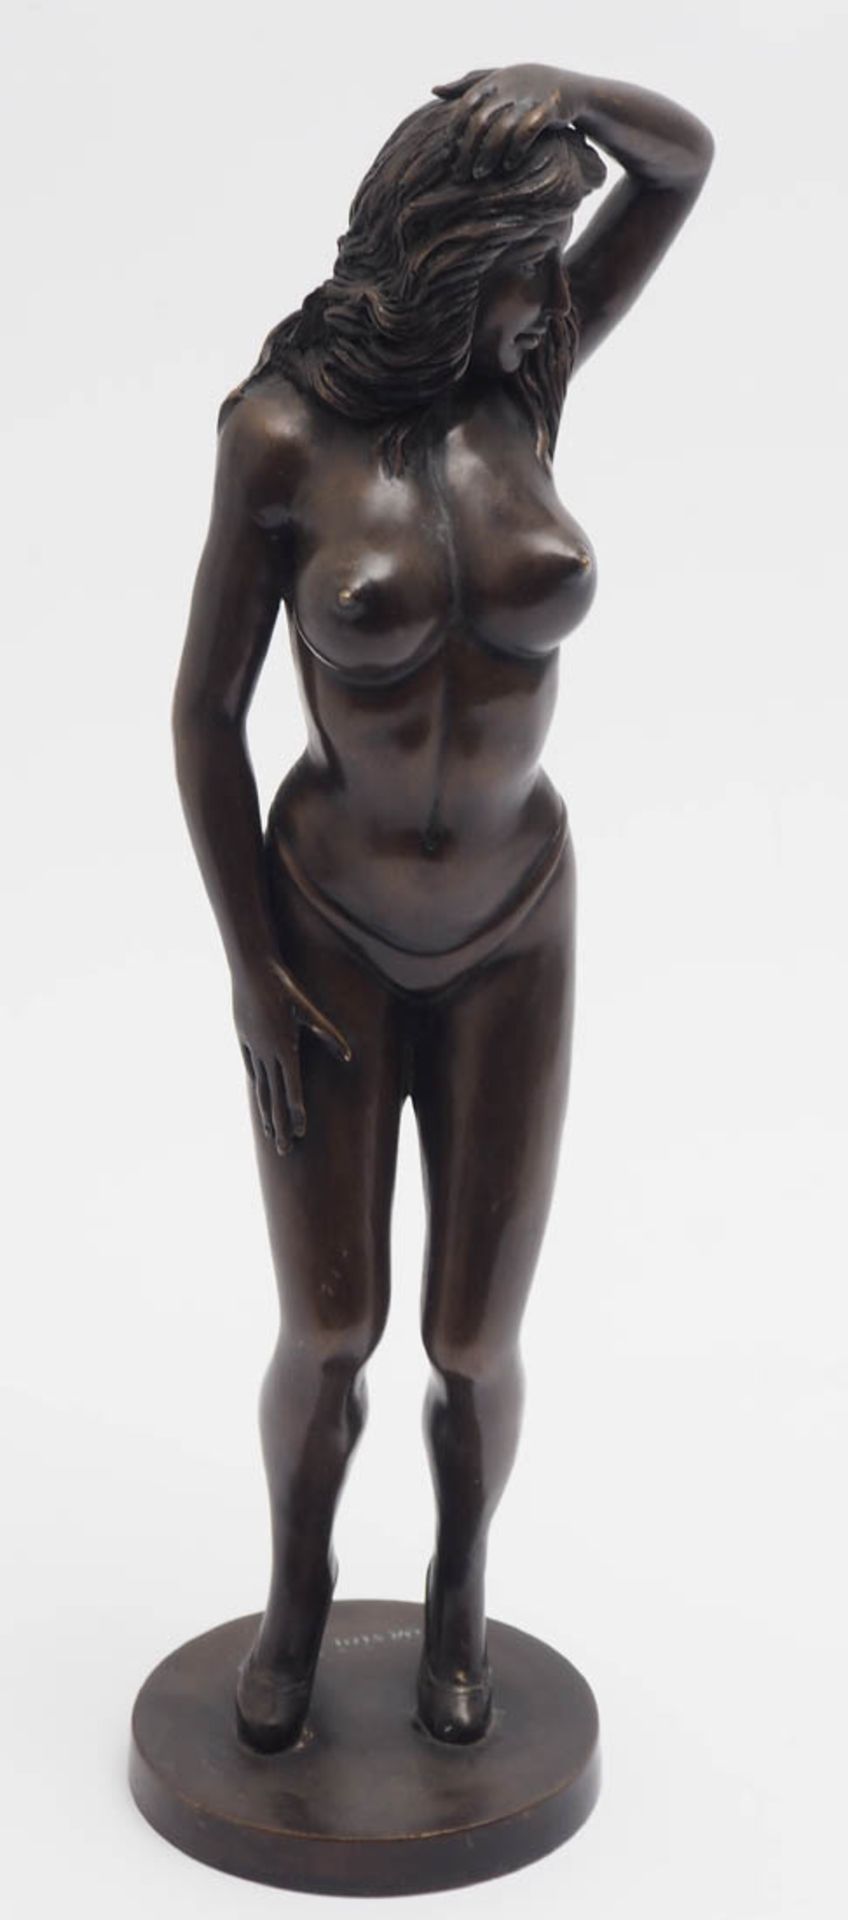 Corsini, 1959 Auf rundem Sockel sparsam bekleideter Frauenakt in bewegter Haltung. Bronze, braun - Bild 2 aus 6